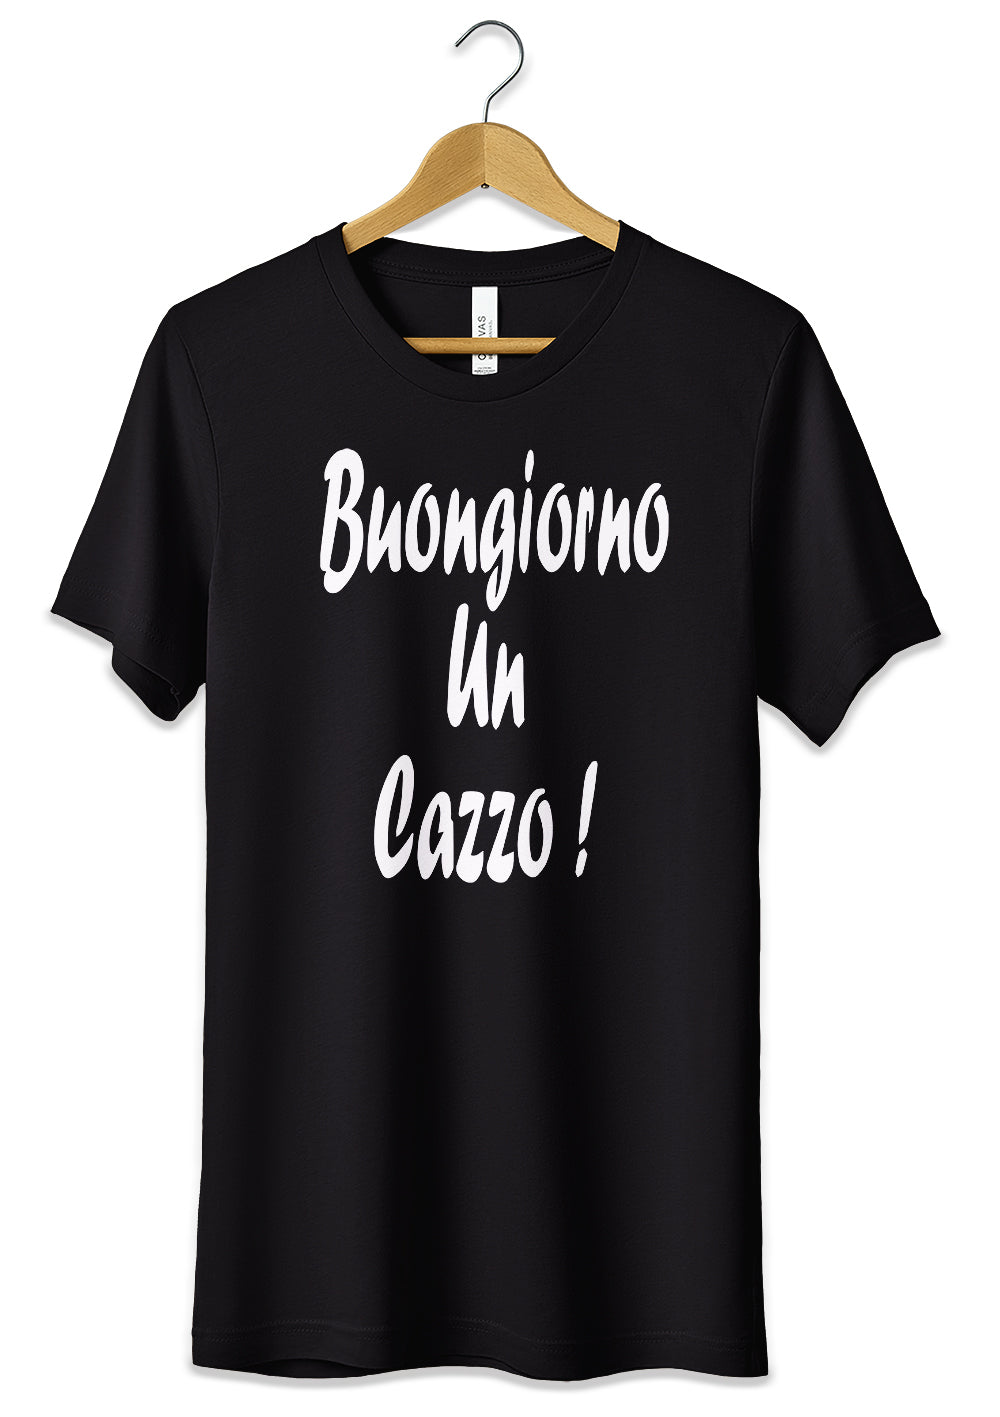 T-Shirt Maglietta Buongiorno un Cazzo Divertente T-Shirt CmrDesignStore Nero S 